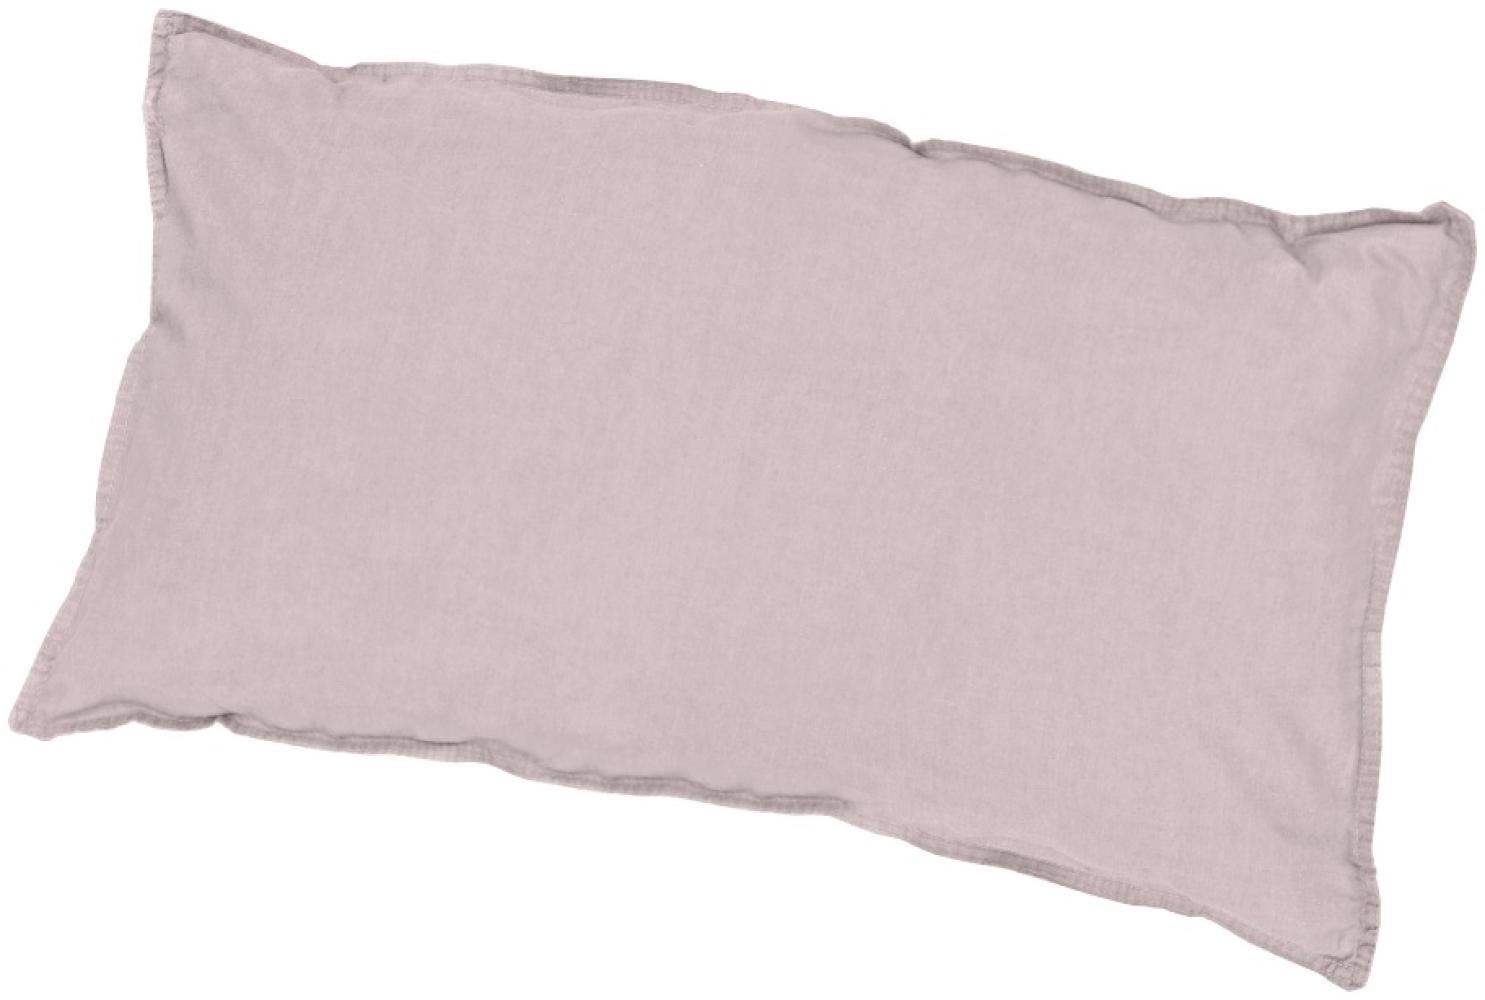 Traumhaft gut schlafen Stone-Washed-Bettwäsche aus 100% Baumwolle, in versch. Farben und Größen : 40 x 80 cm : Rosé Bild 1